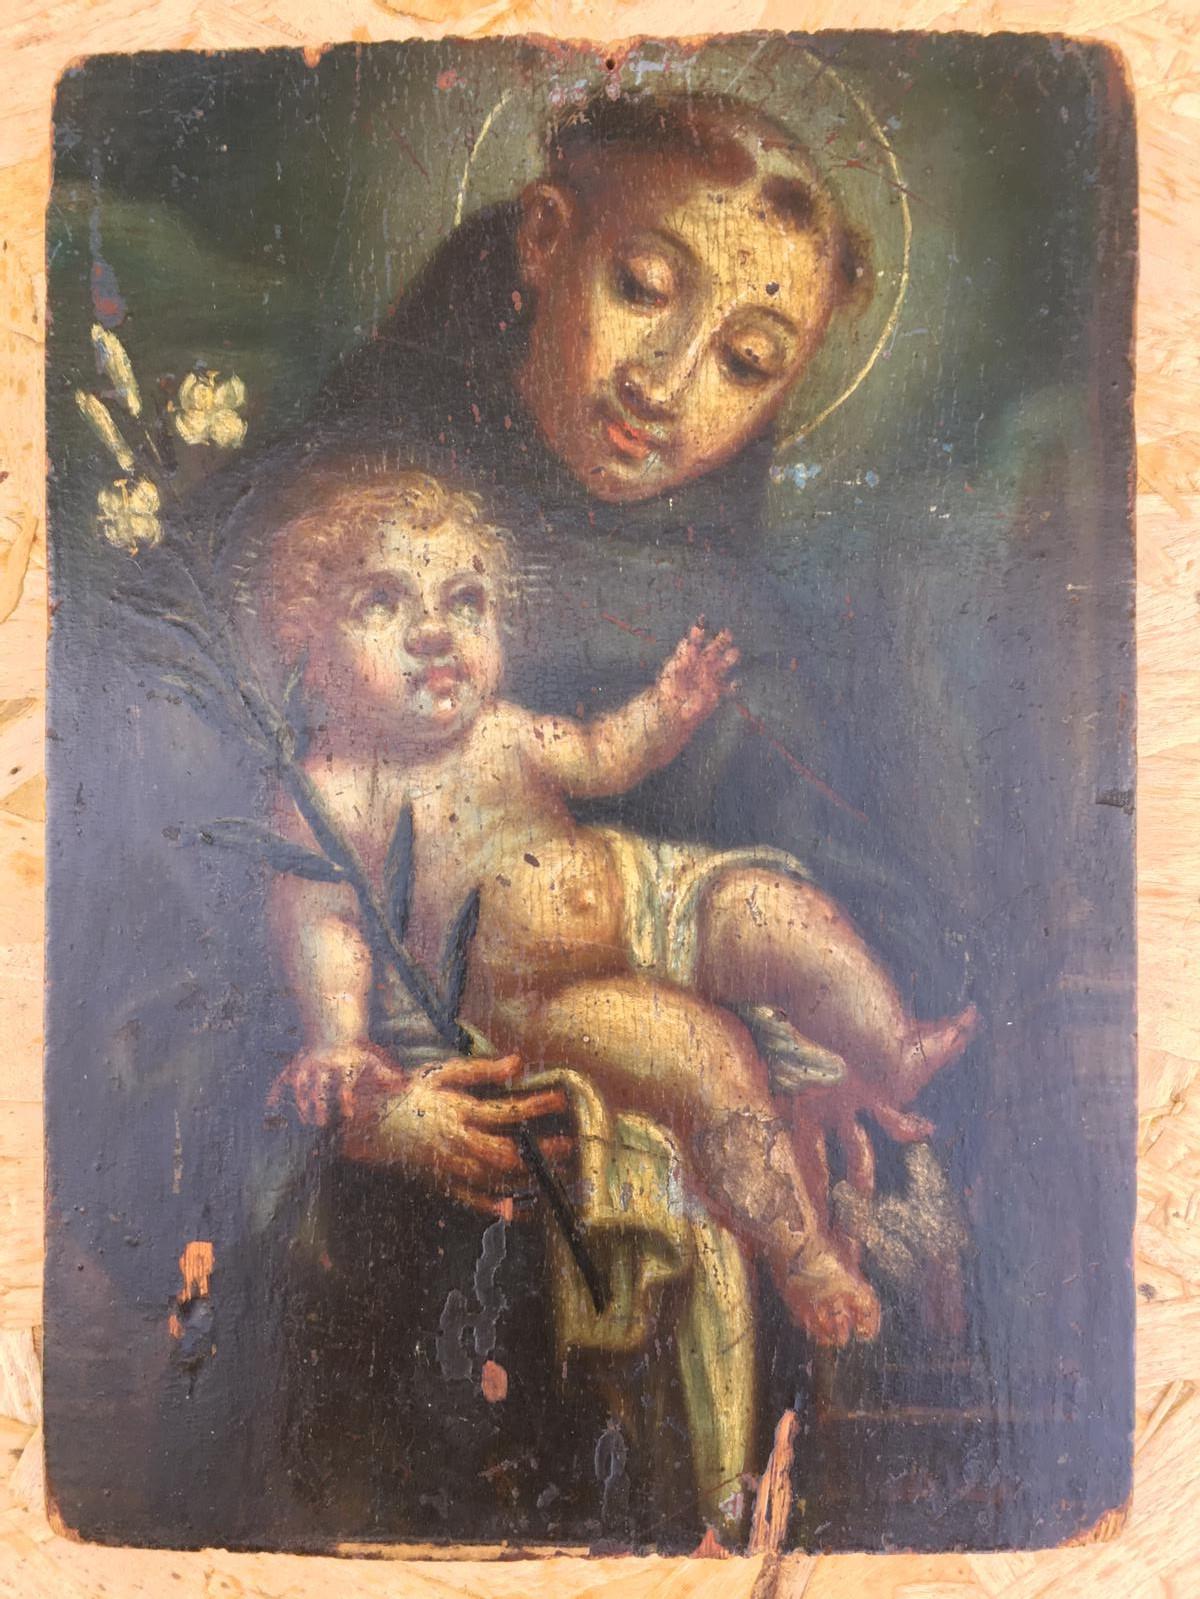 Original-Ölgemälde eines unbekannten Künstlers auf einer Tafel mit der Darstellung des Heiligen Kindes.

--Dieses Gemälde stellt den Heiligen Antonius von Padua dar. Die Szene ist eine, die oft gewählt wird, um ihn darzustellen: Seine Mitbrüder